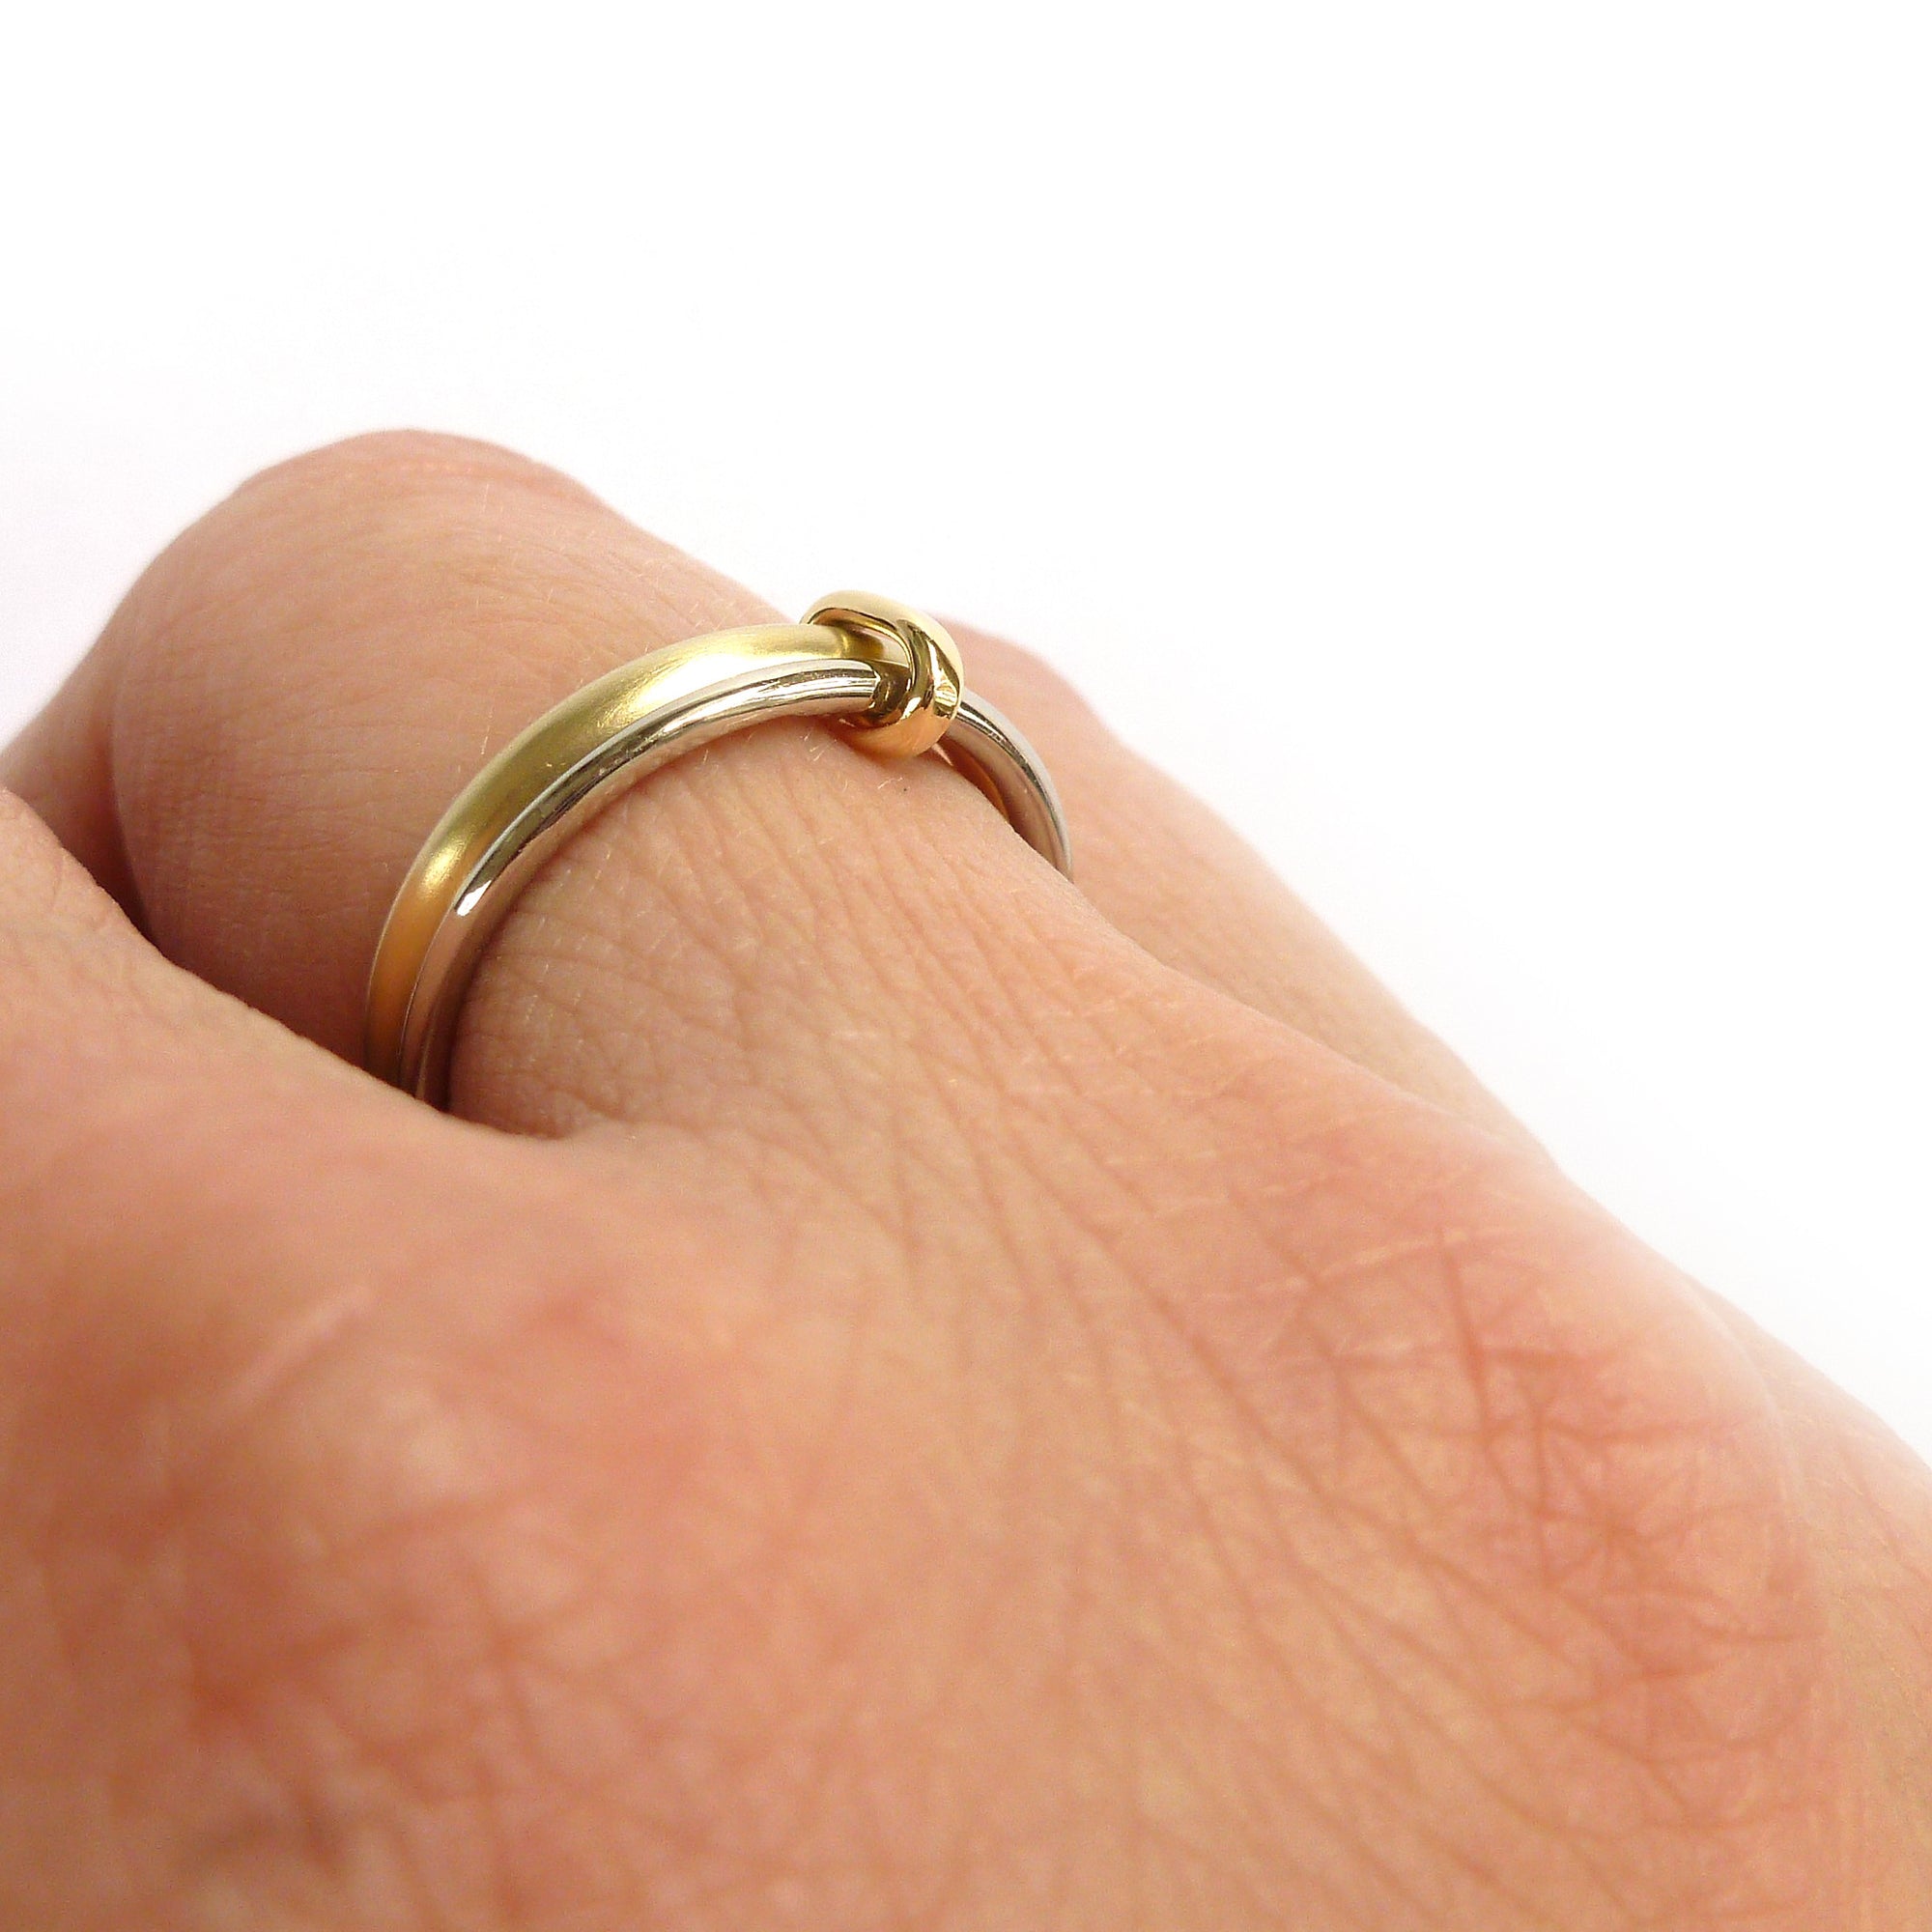 modern wedding rings for men and women 